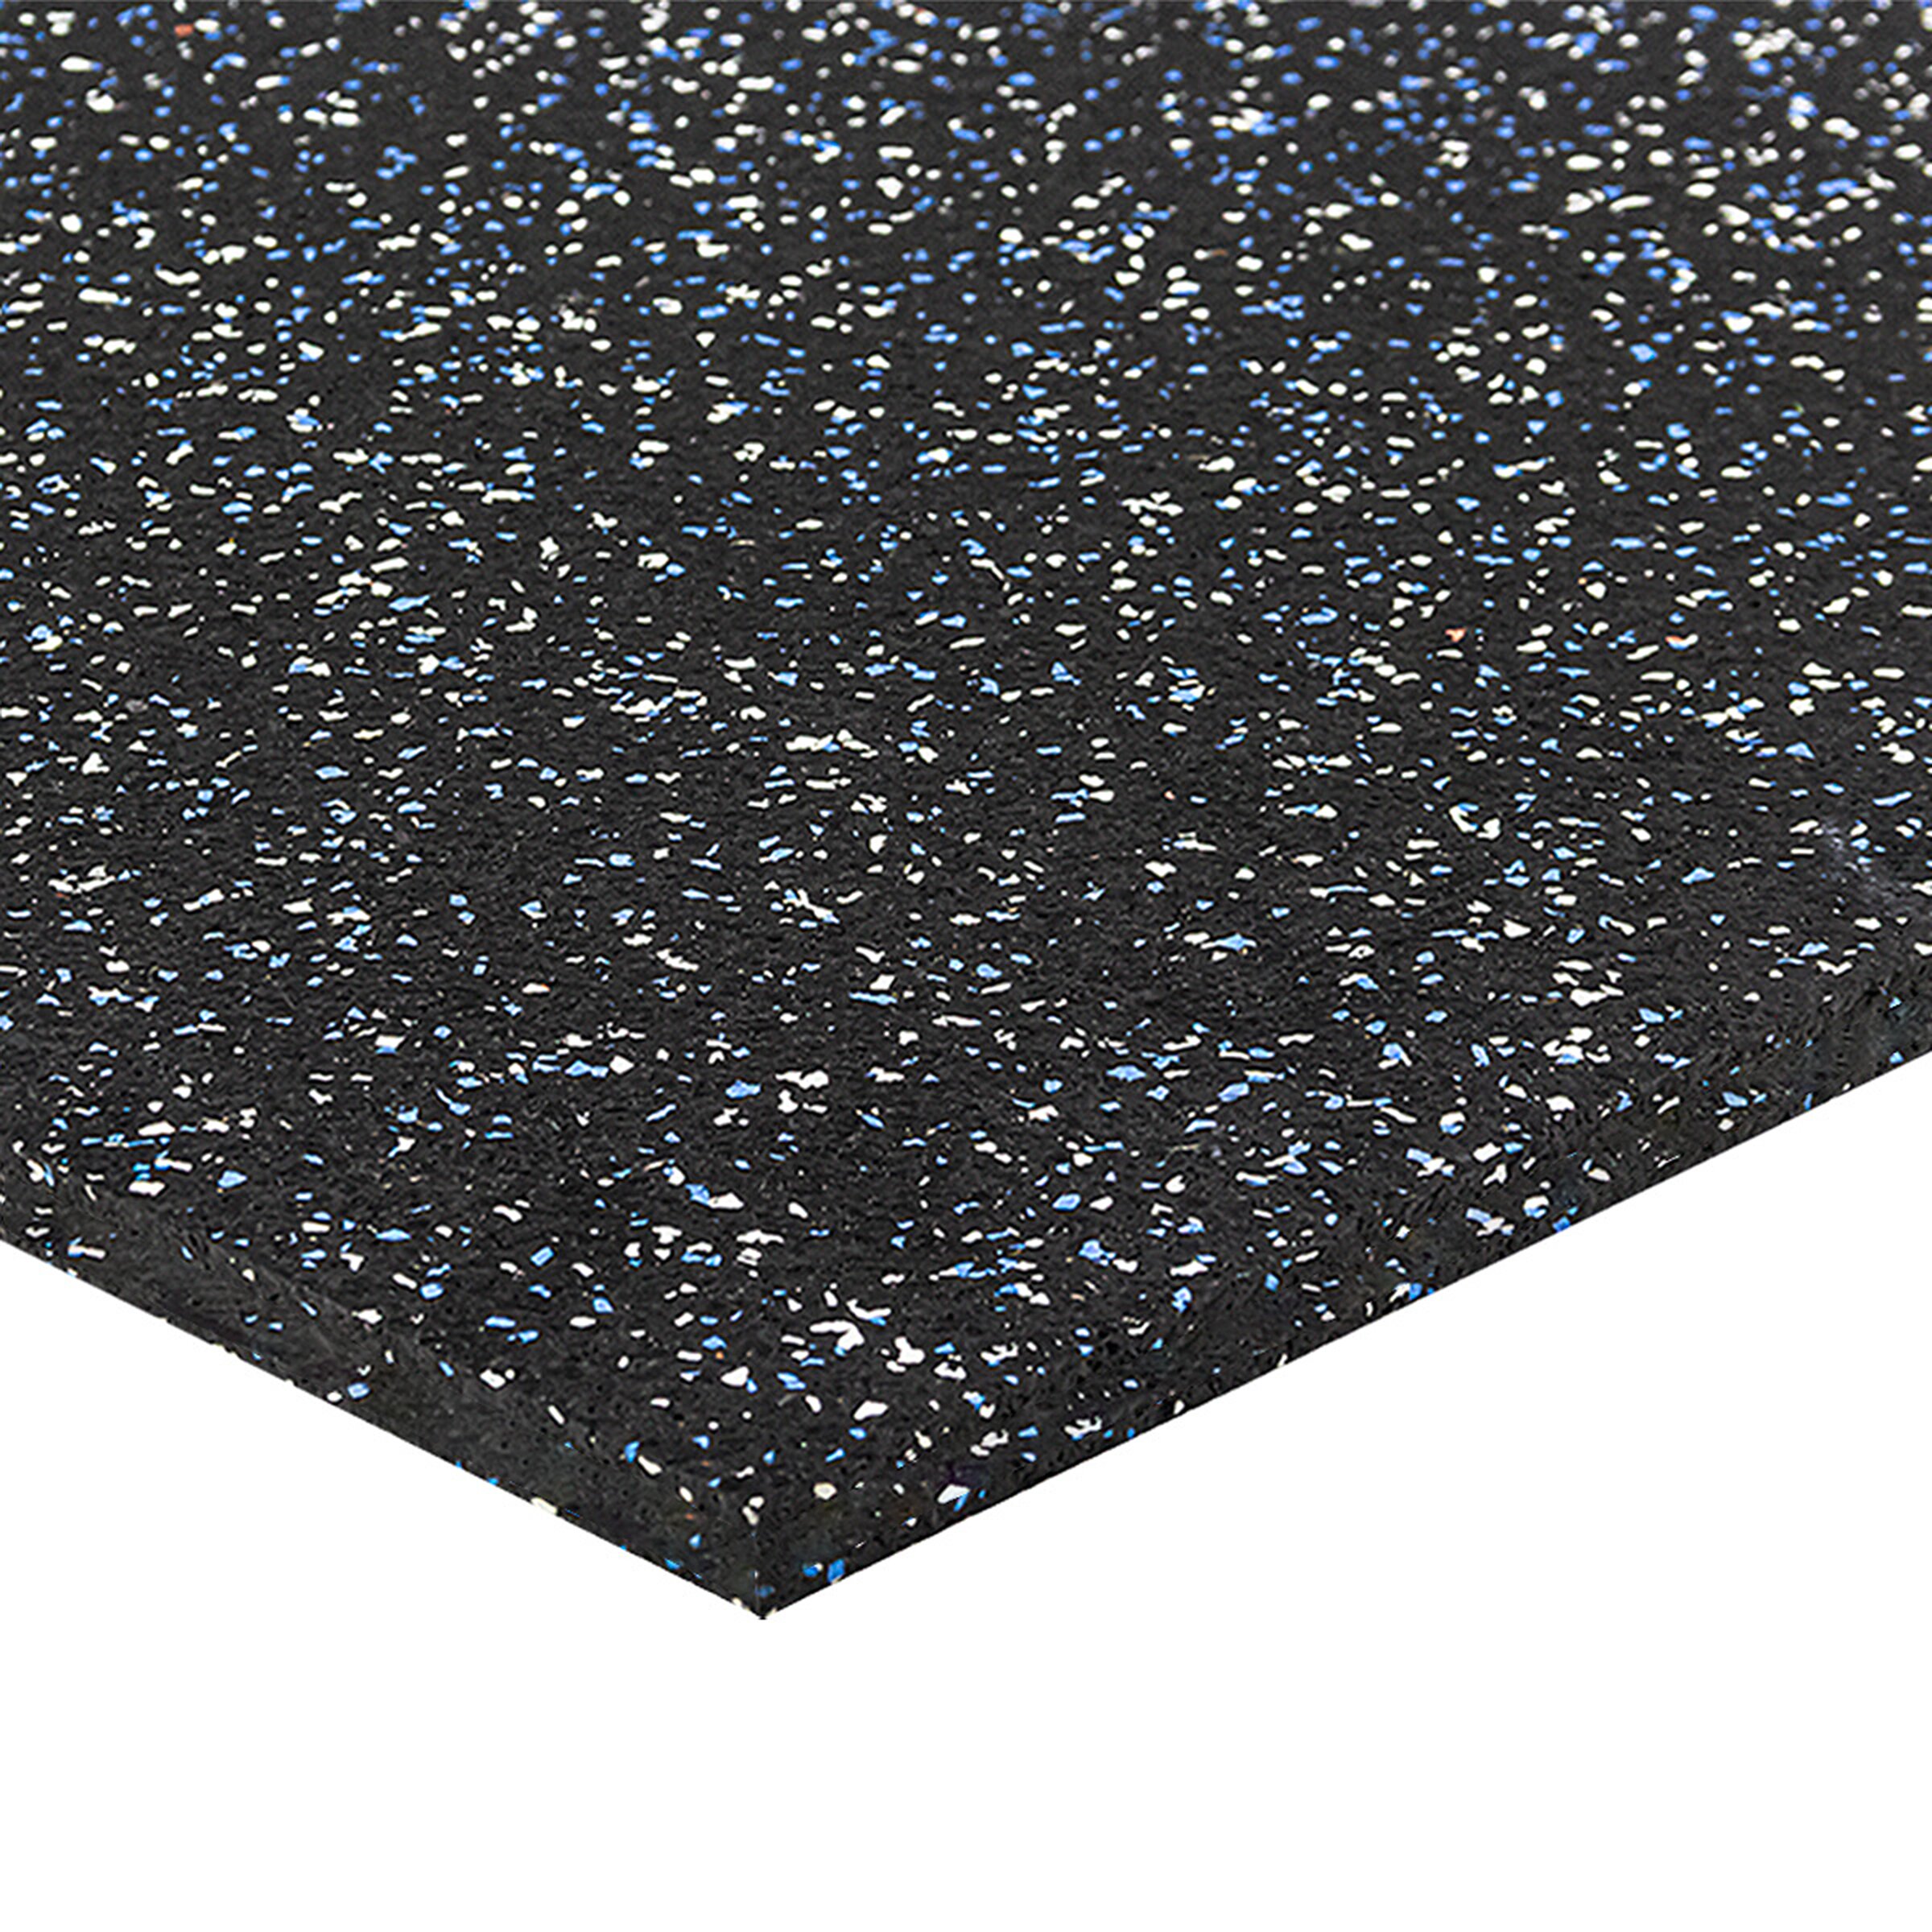 Černo-bílo-modrá podlahová guma FLOMA FitFlo SF1050 - délka 50 cm, šířka 50 cm, výška 1,6 cm